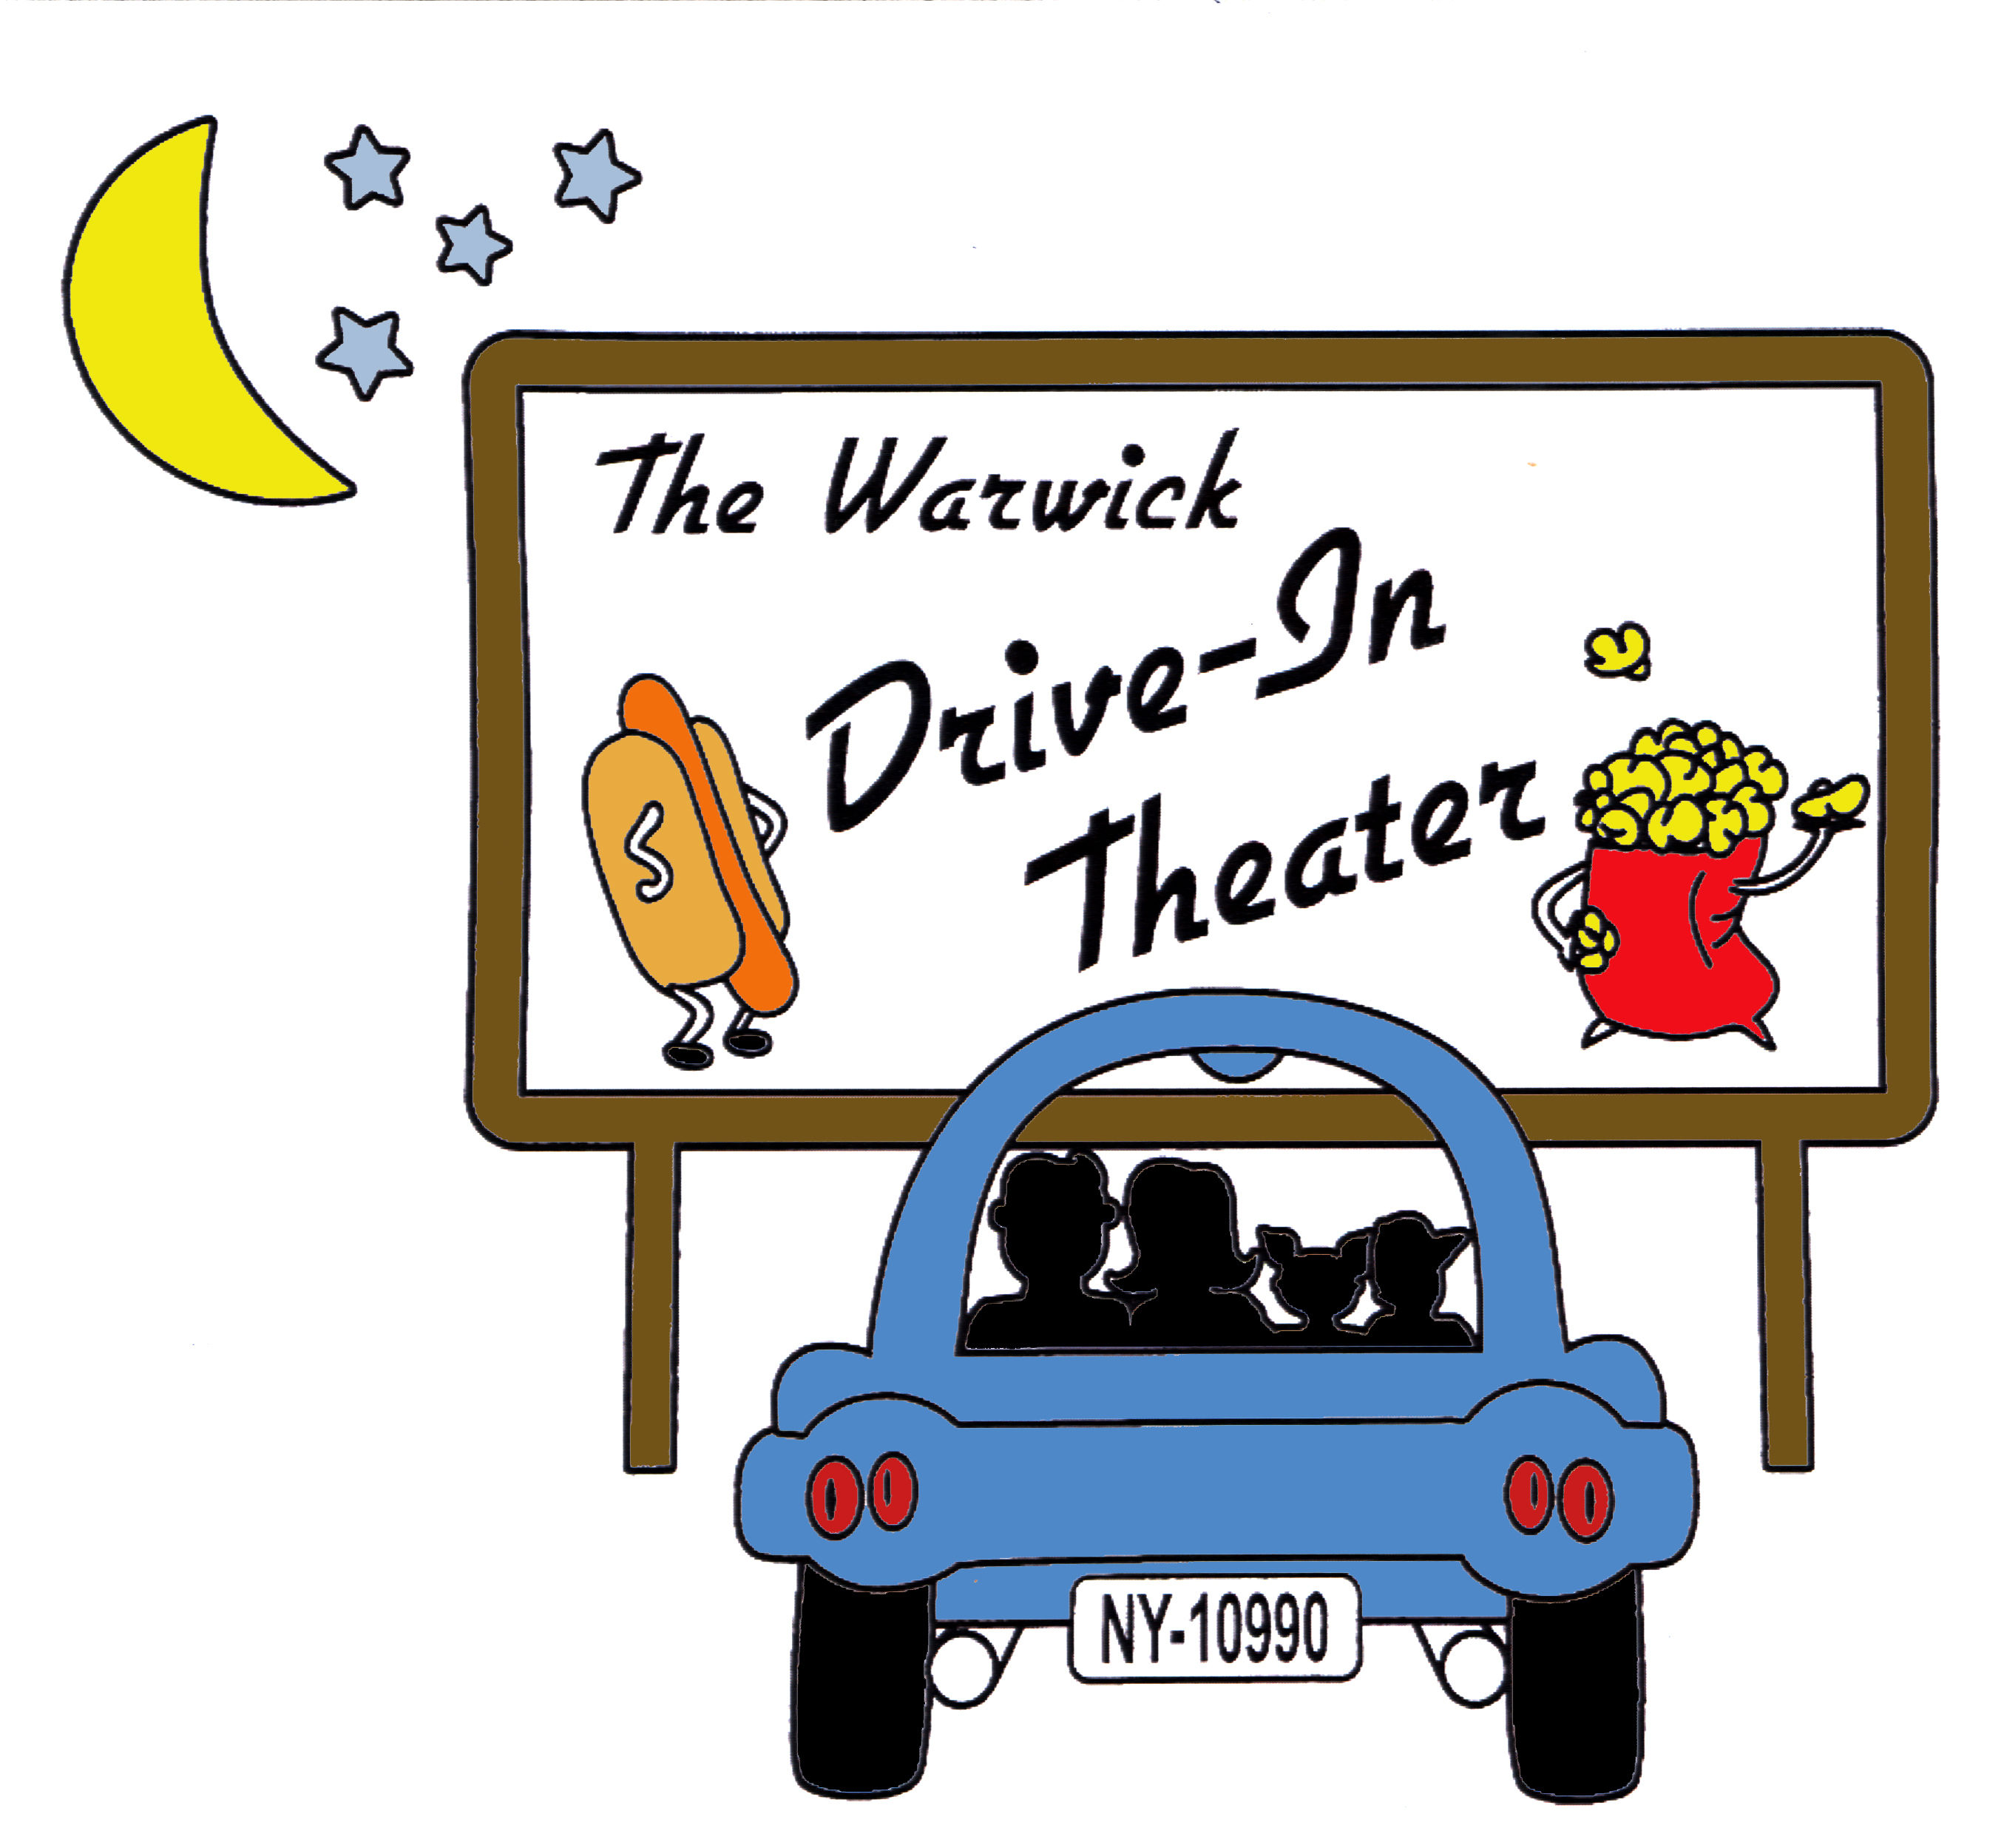 WARWICK - Retro Night (+ Last Night of the Season!) @ Warwick Drive-in